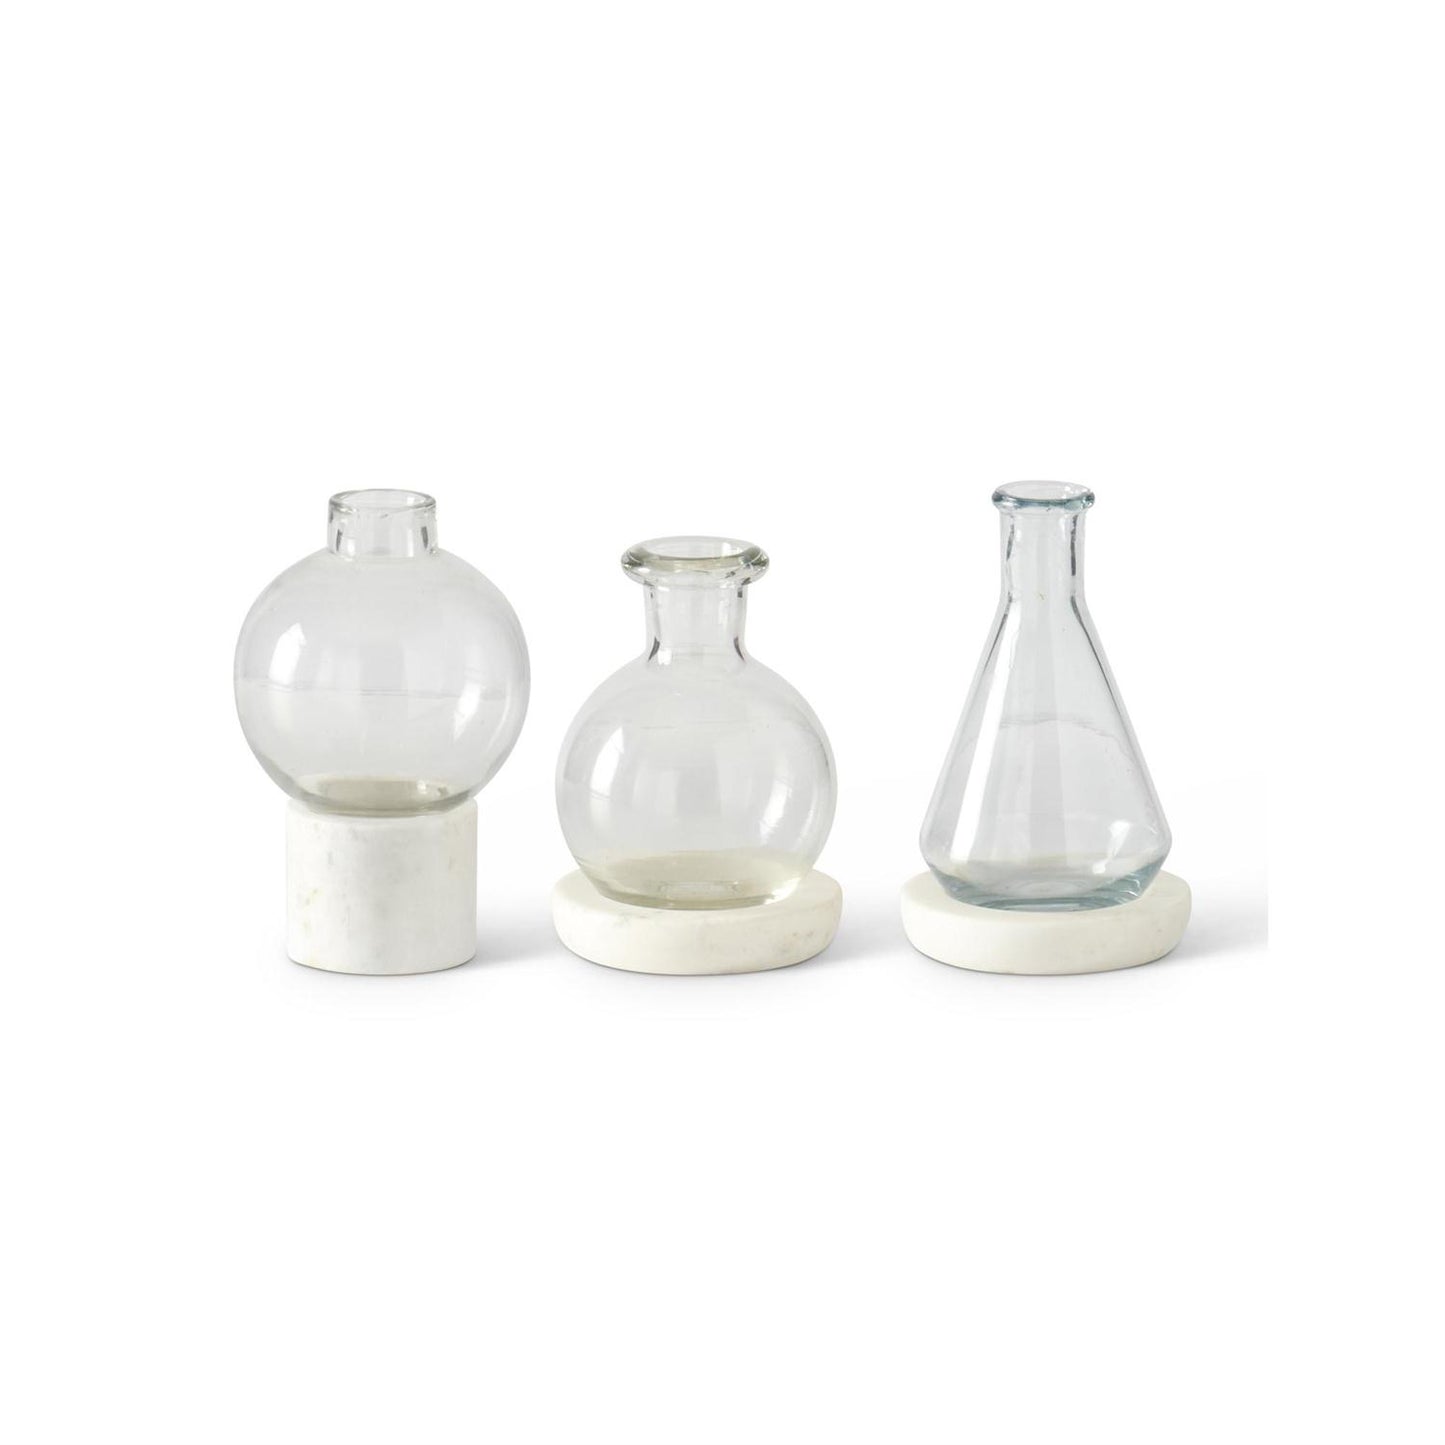 Glass Vases on White Marble Base